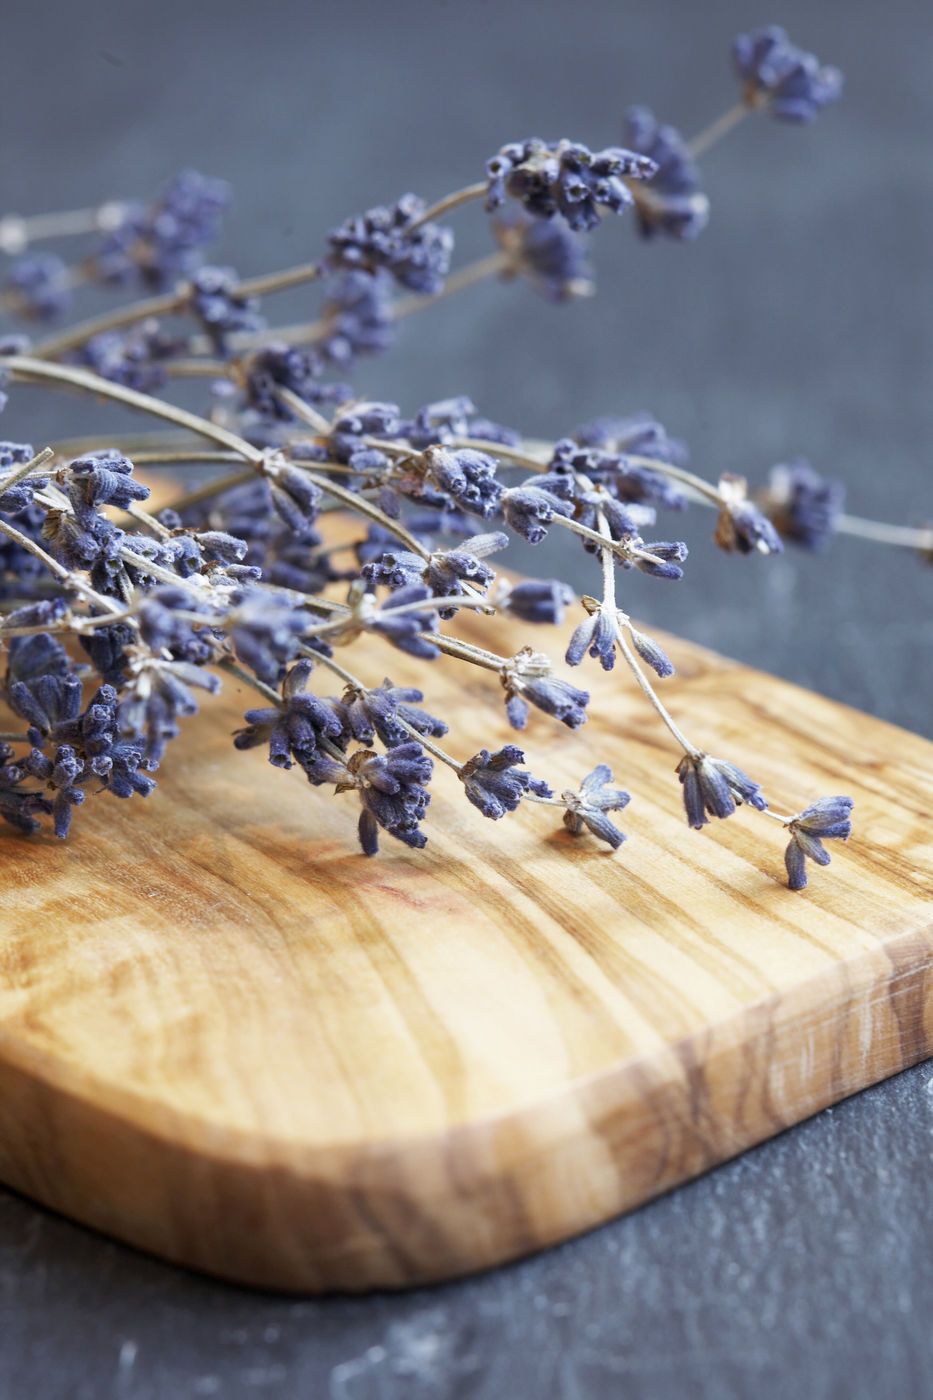 Tổng hợp hình ảnh hoa lavender khô đẹp nhất – Loài hoa may mắn, hạnh phúc - [Kích thước hình ảnh: 933x1400 px]